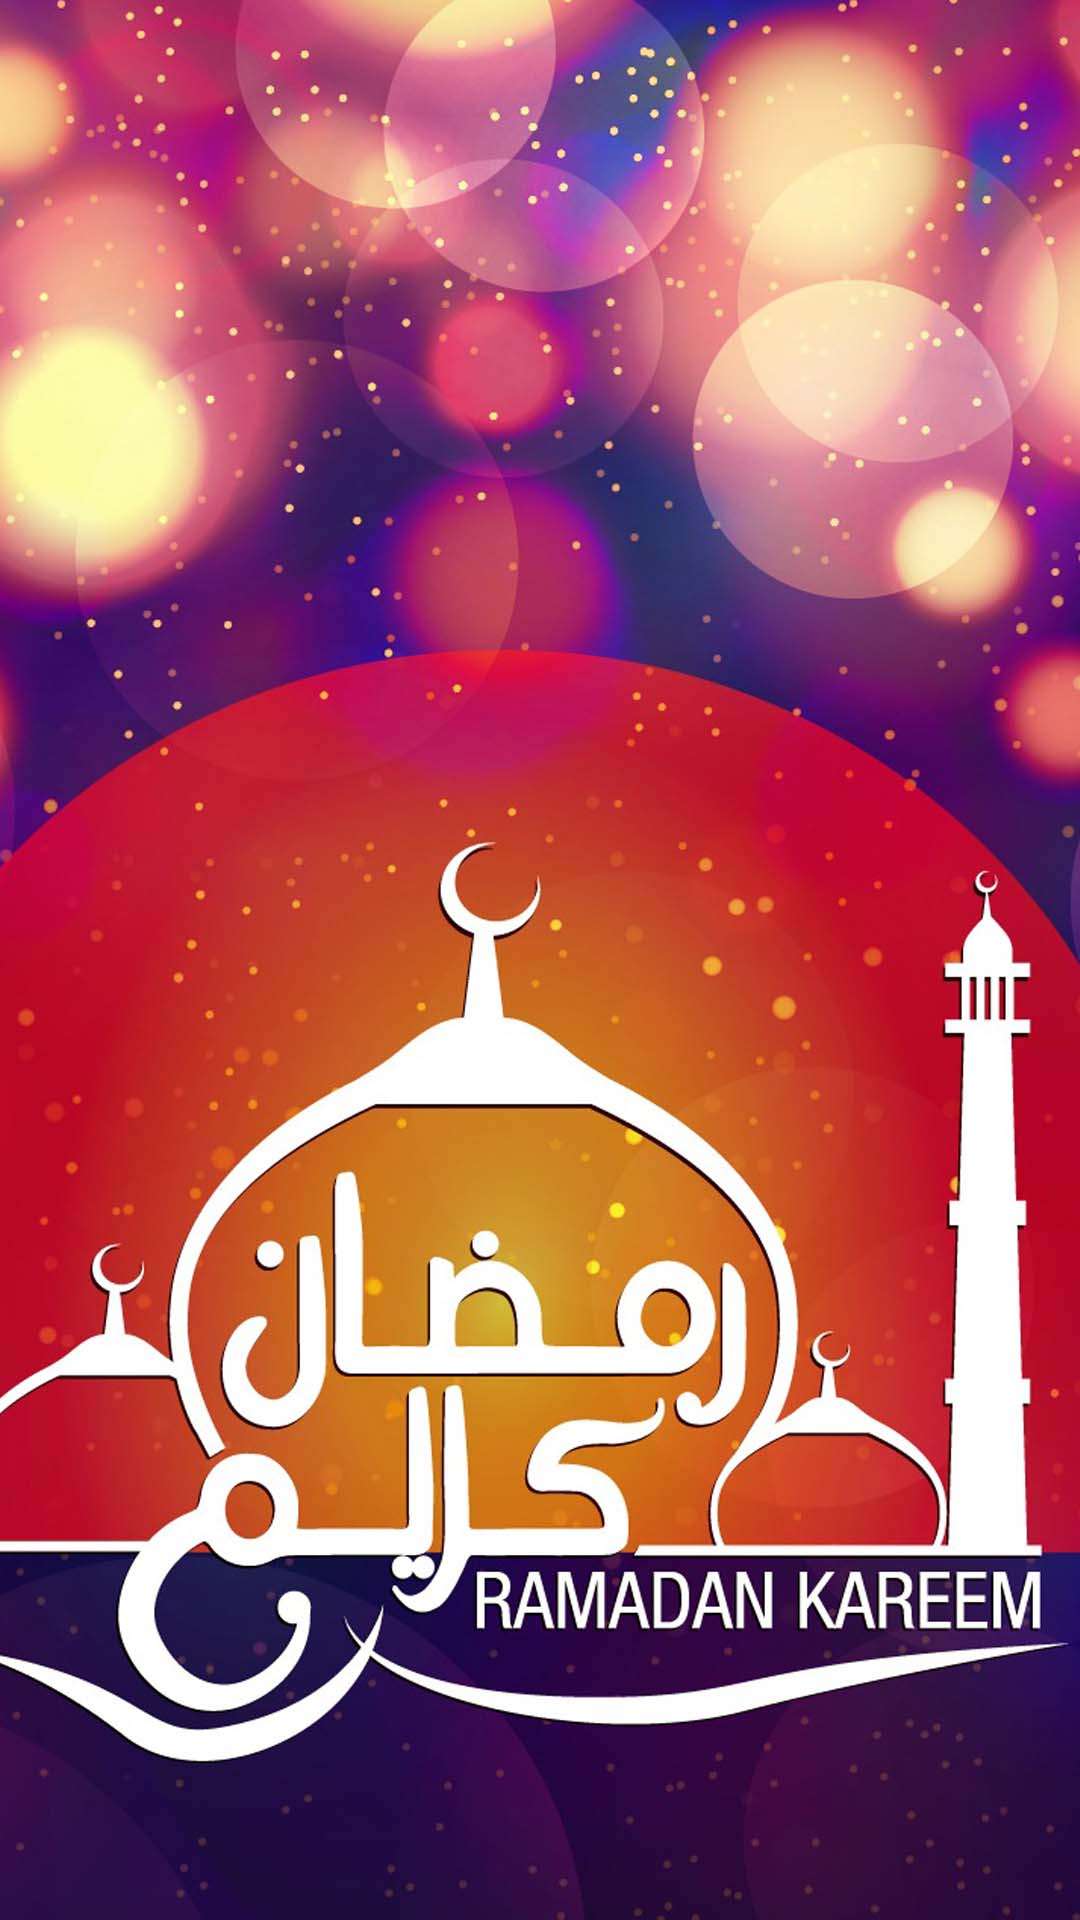 اجمل خلفيات الموبايل بمناسبه شهر رمضان 2020 HD-1